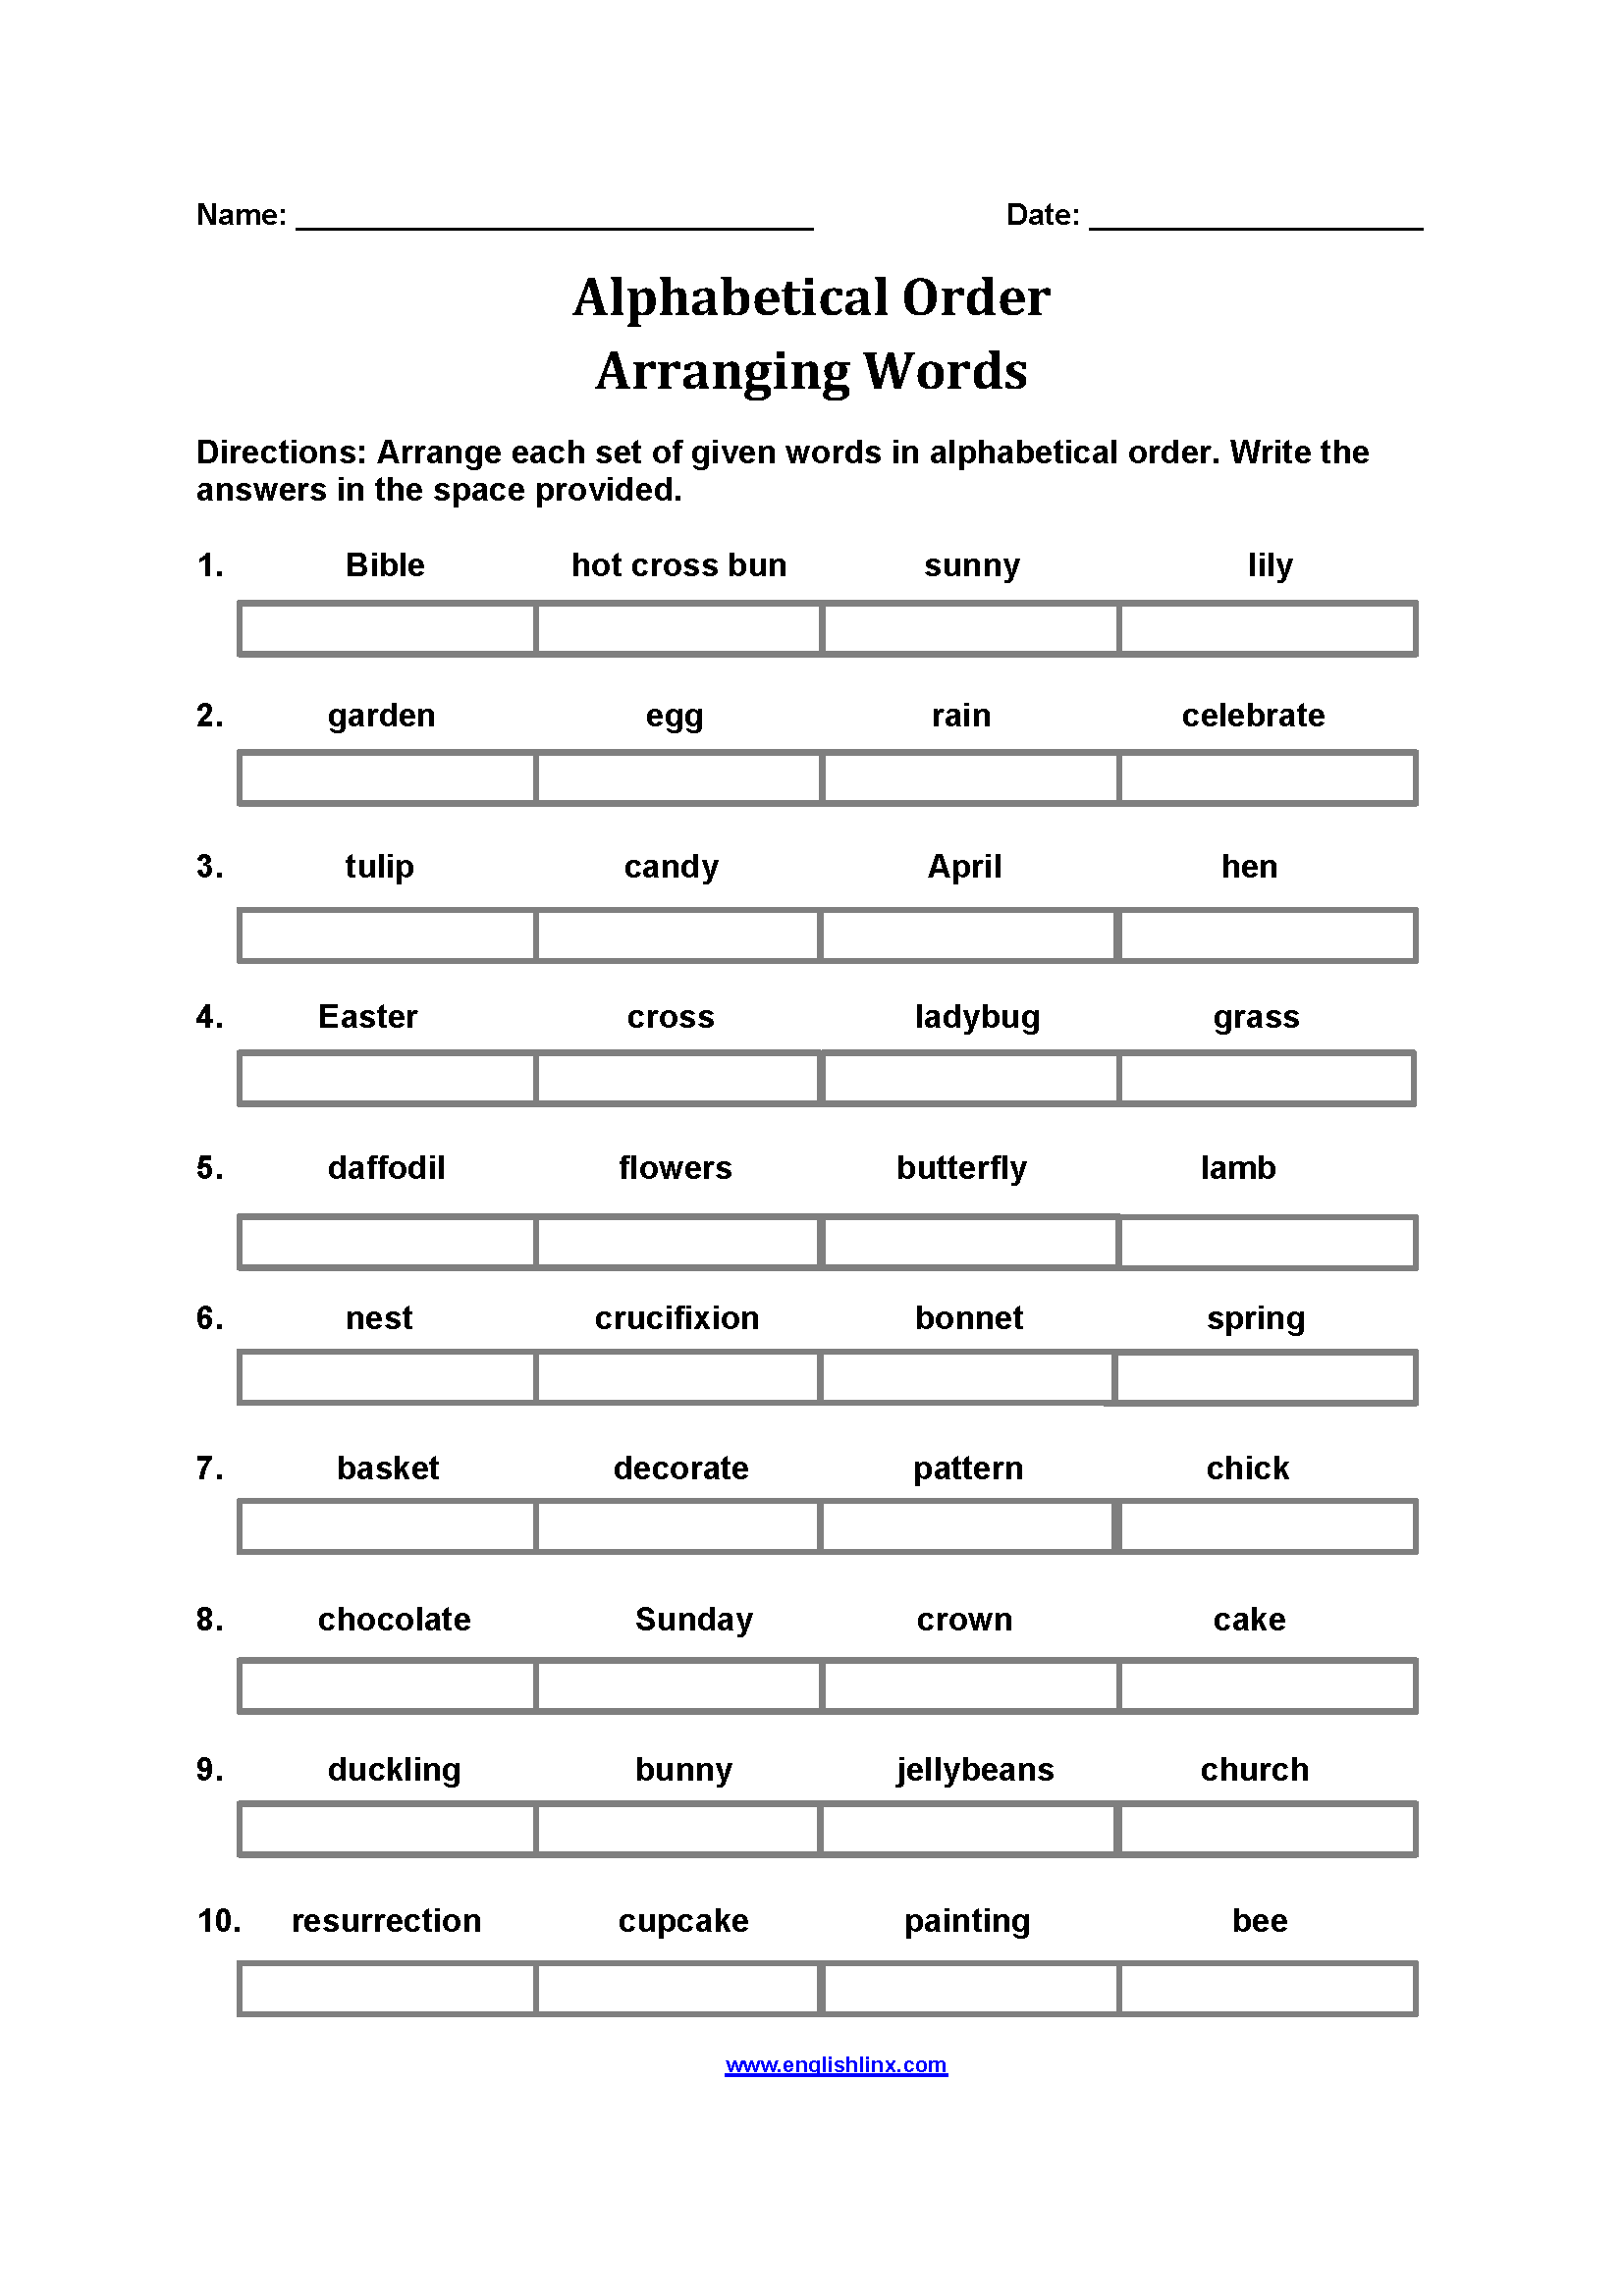 Arranging Words Alphabetical Order Worksheets